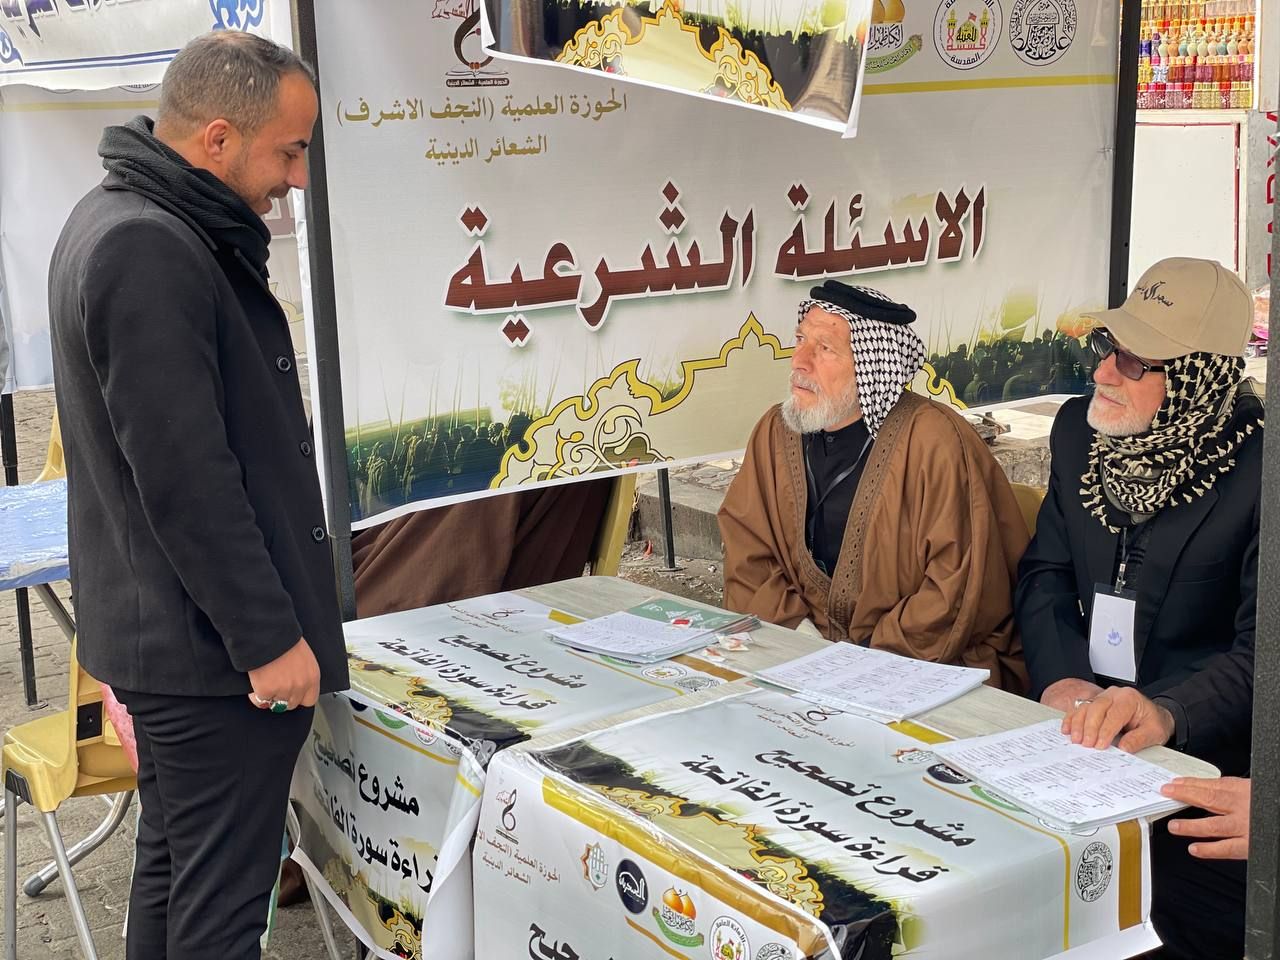 ضمن المشروع التبليغي للحوزة العلمية معهد القرآن الكريم يفتتح مراكز لتعليم القراءة الصحيحة في بغداد